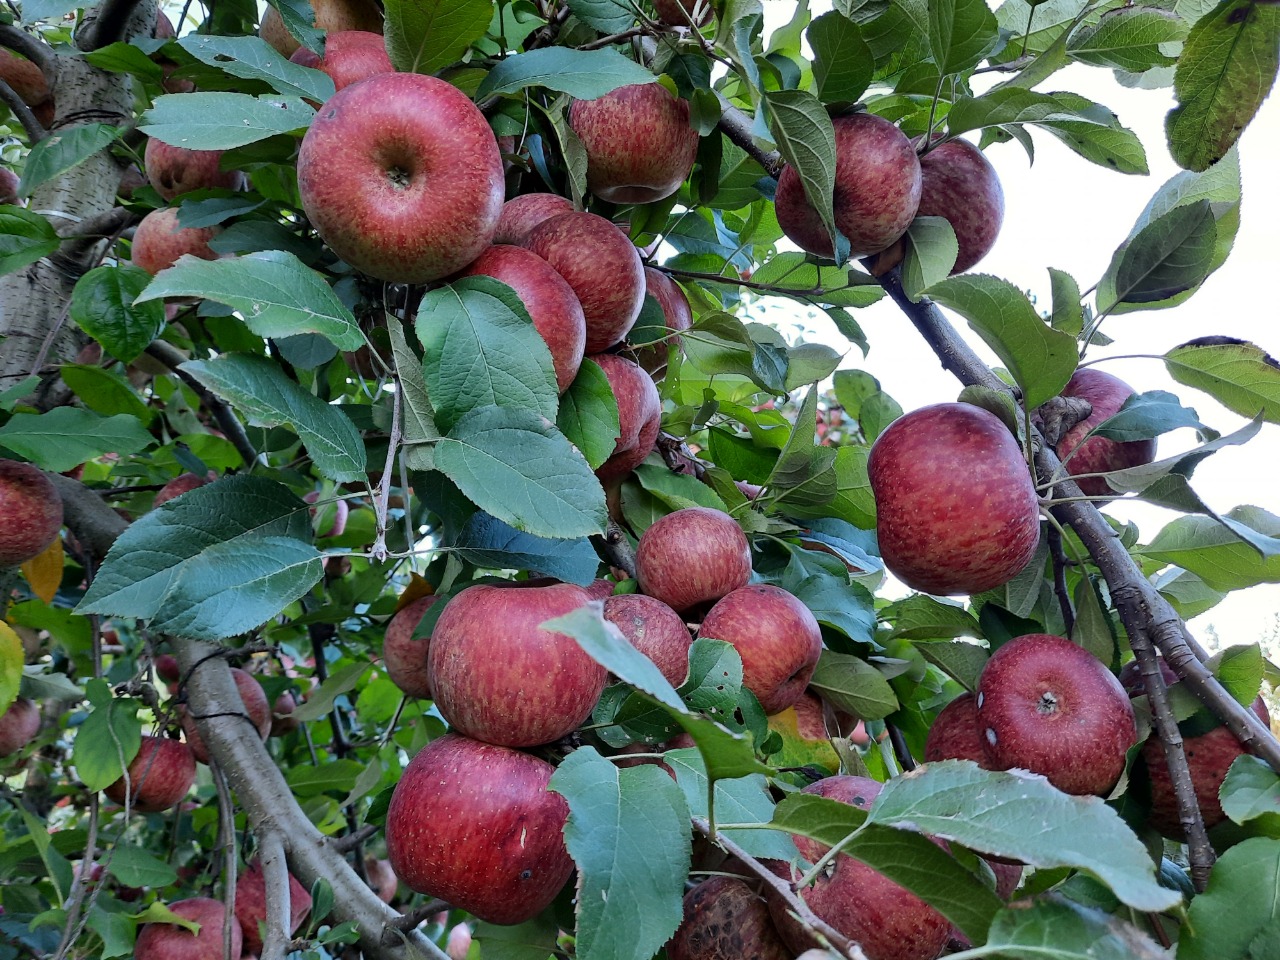 Líder nacional na produção de maçãs, Santa Catarina é destaque pela qualidade e sanidade dos pomares